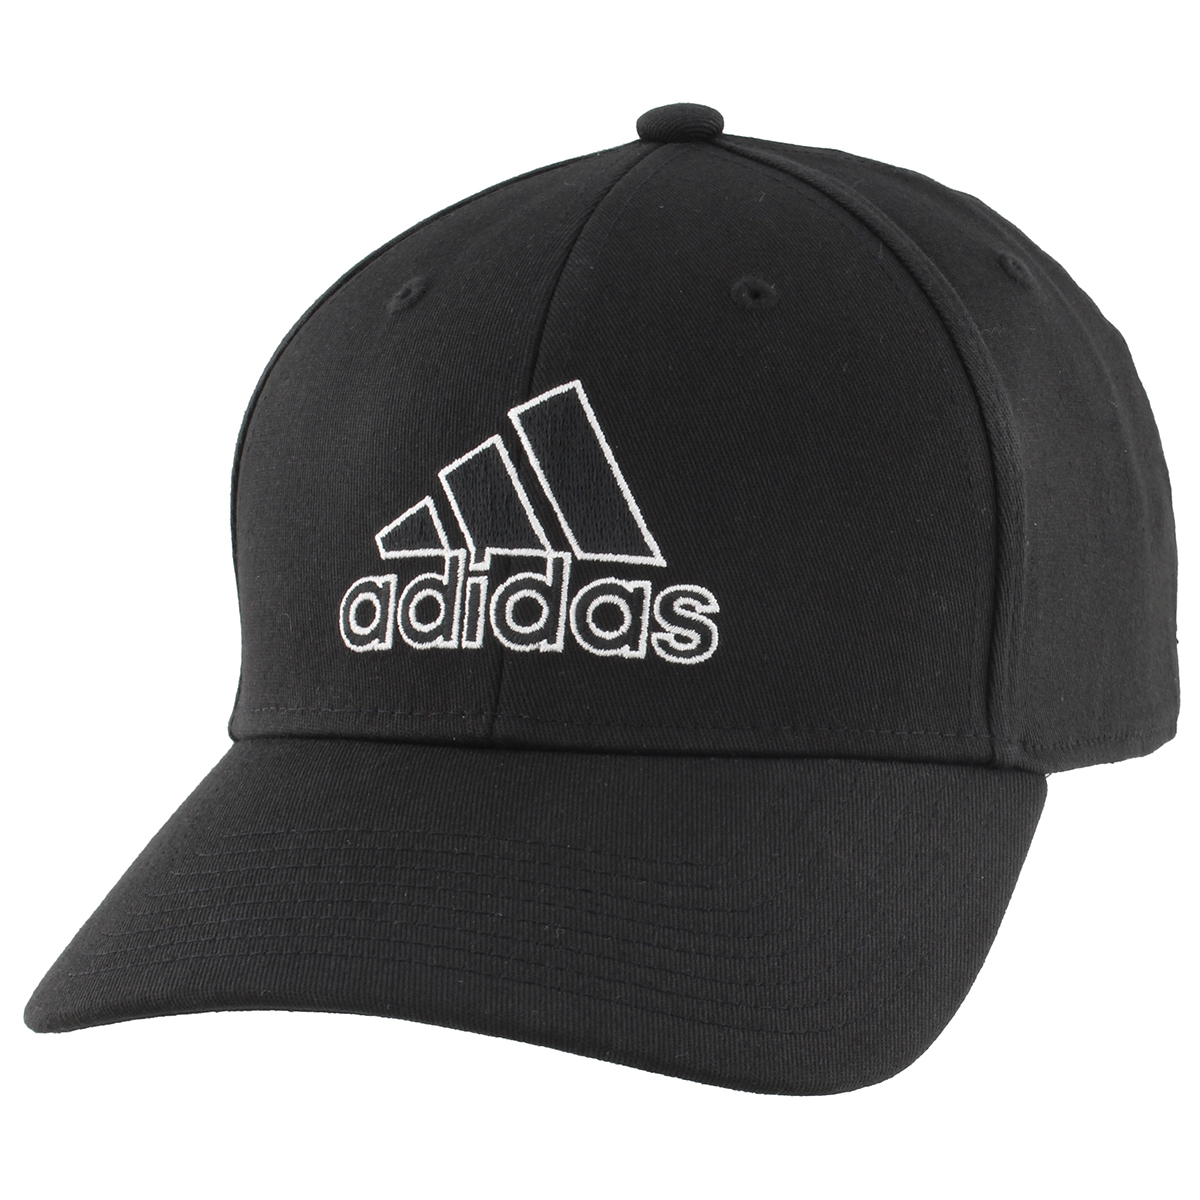 Adidas Men's Producer Stretch-Fit Cap - Black, L/XL